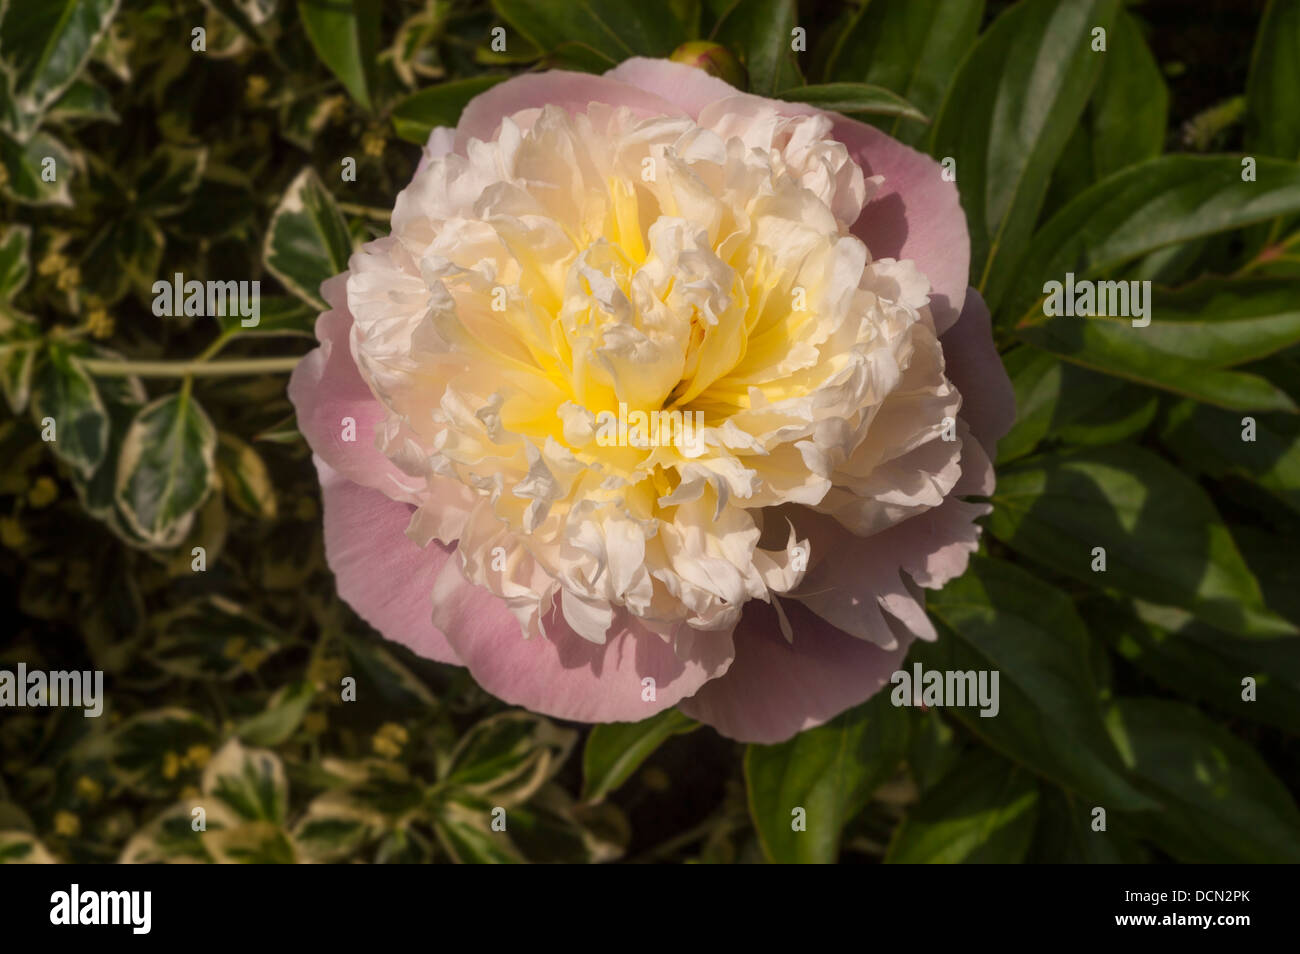 Arbusto fiore di peonia con petali esterni rosa pallido e petali interni color crema frilly, coltivati in un giardino britannico Foto Stock